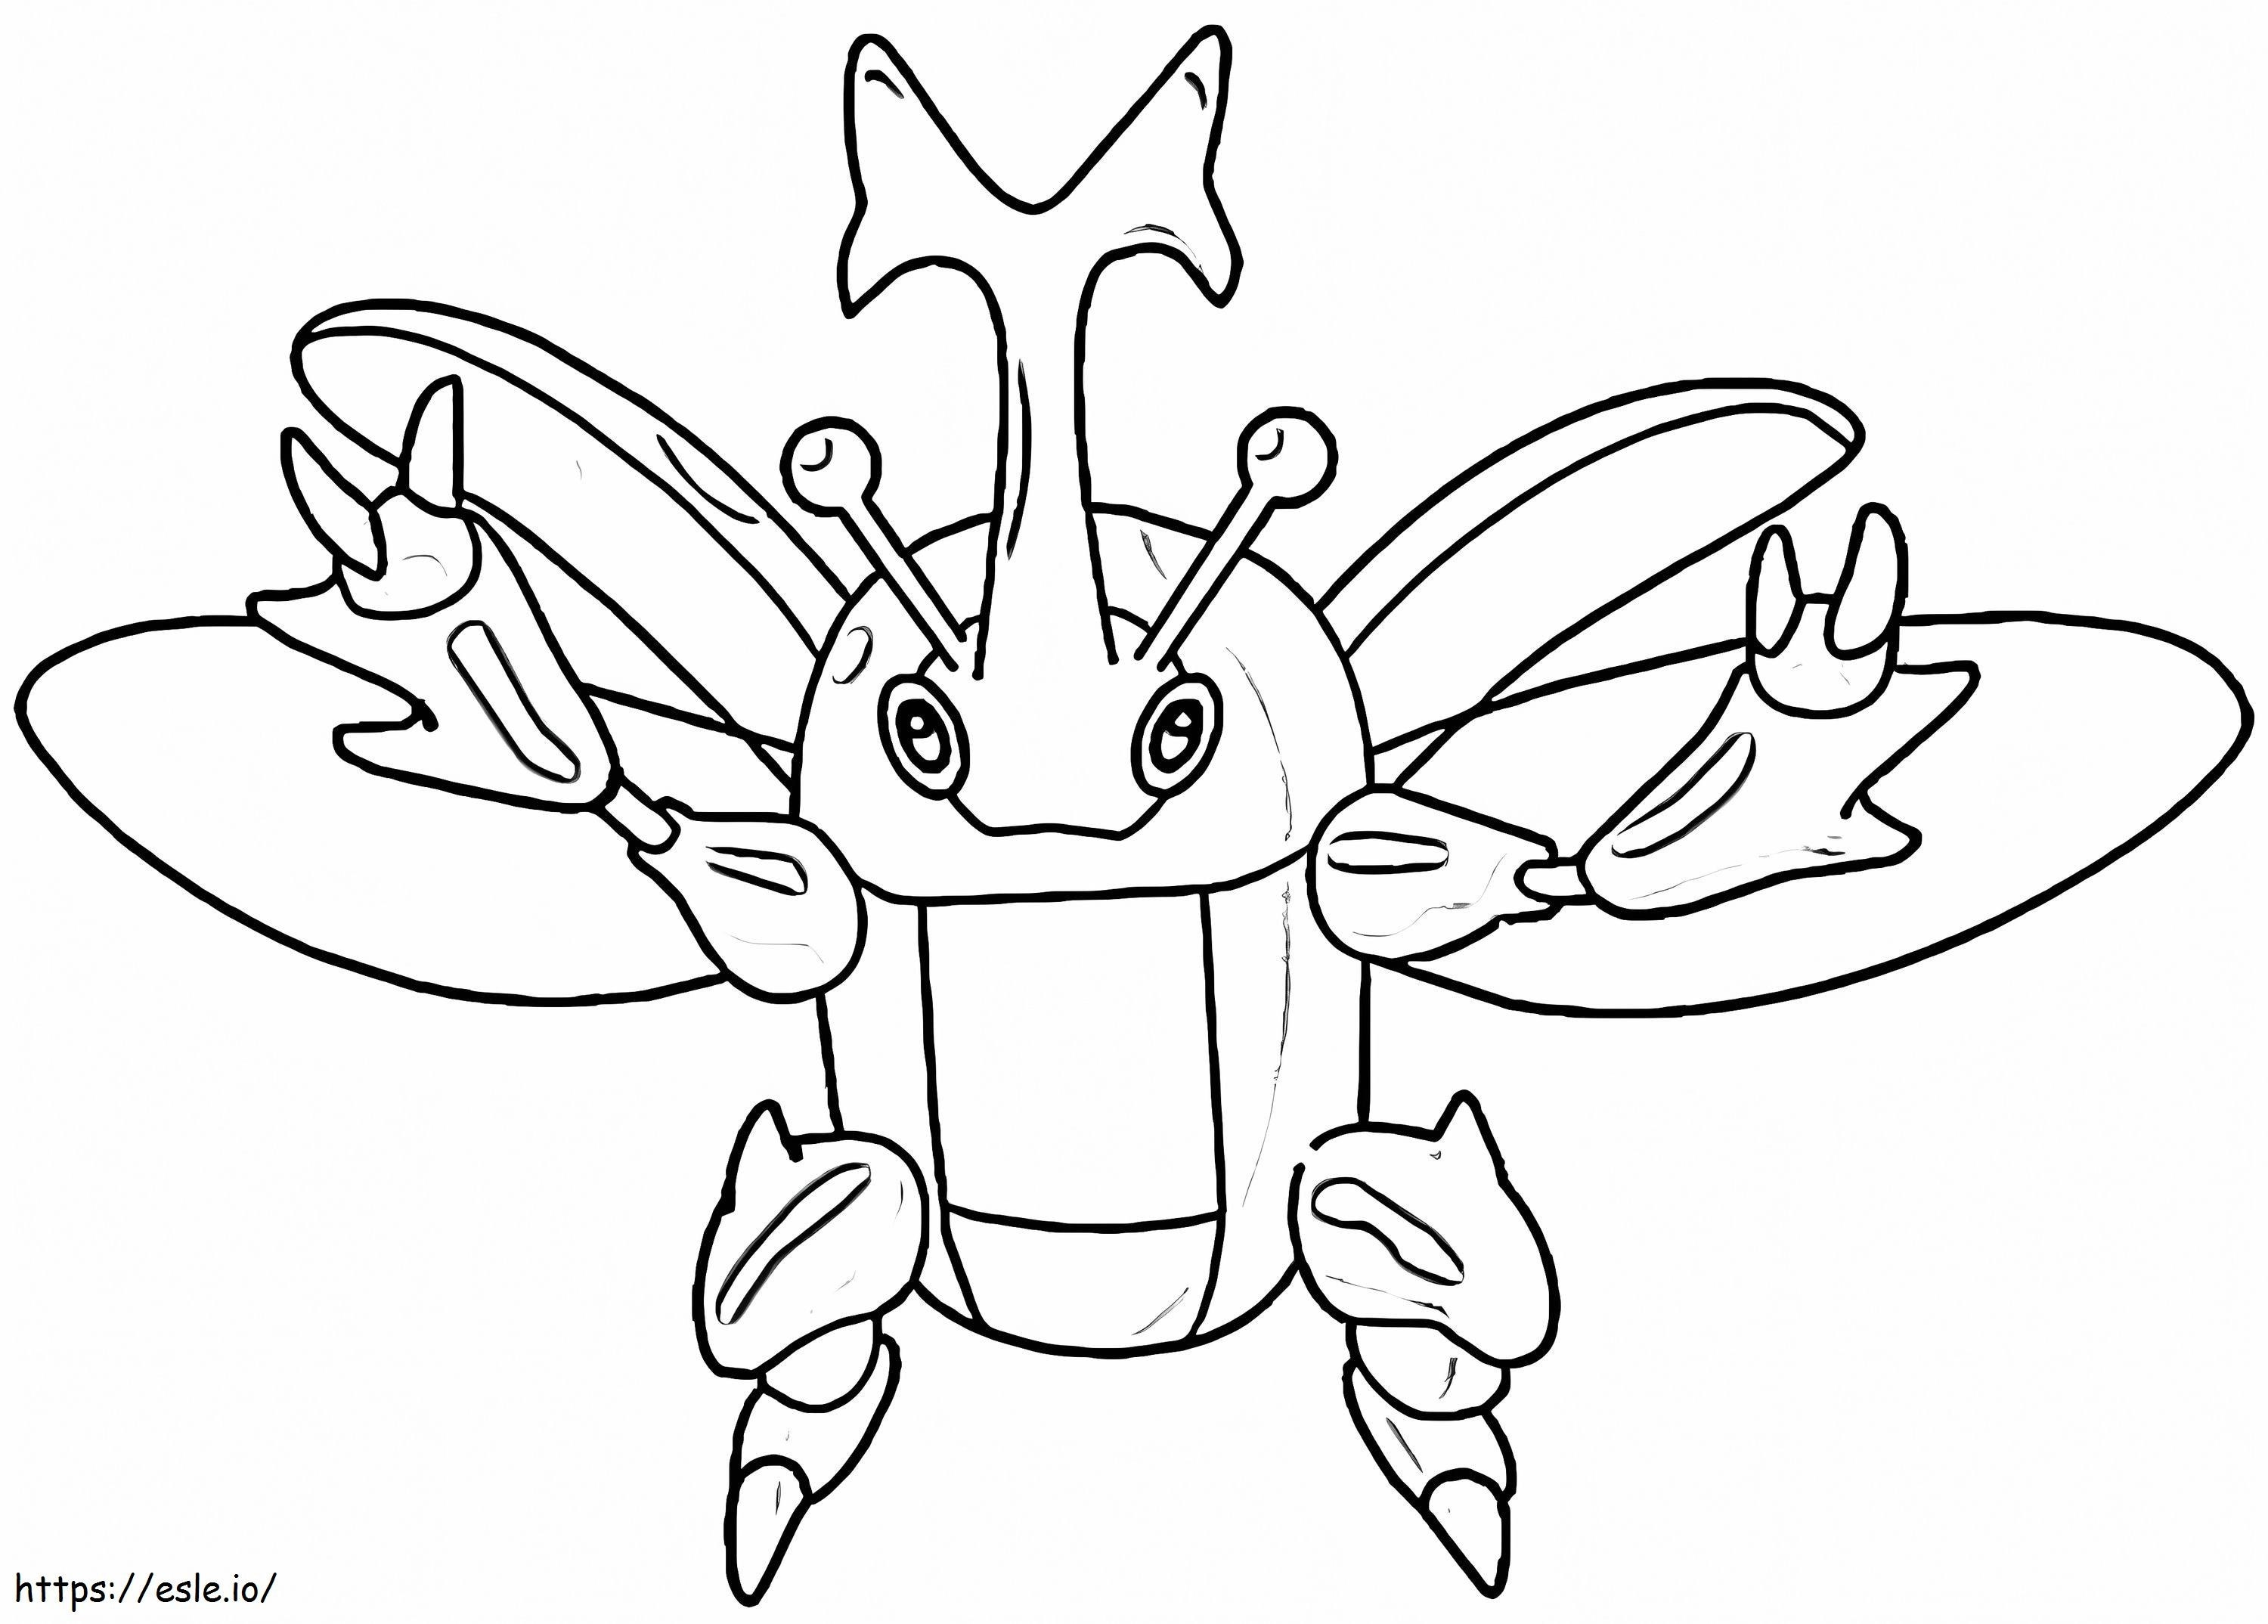 Coloriage Génial Pokémon Heracross à imprimer dessin